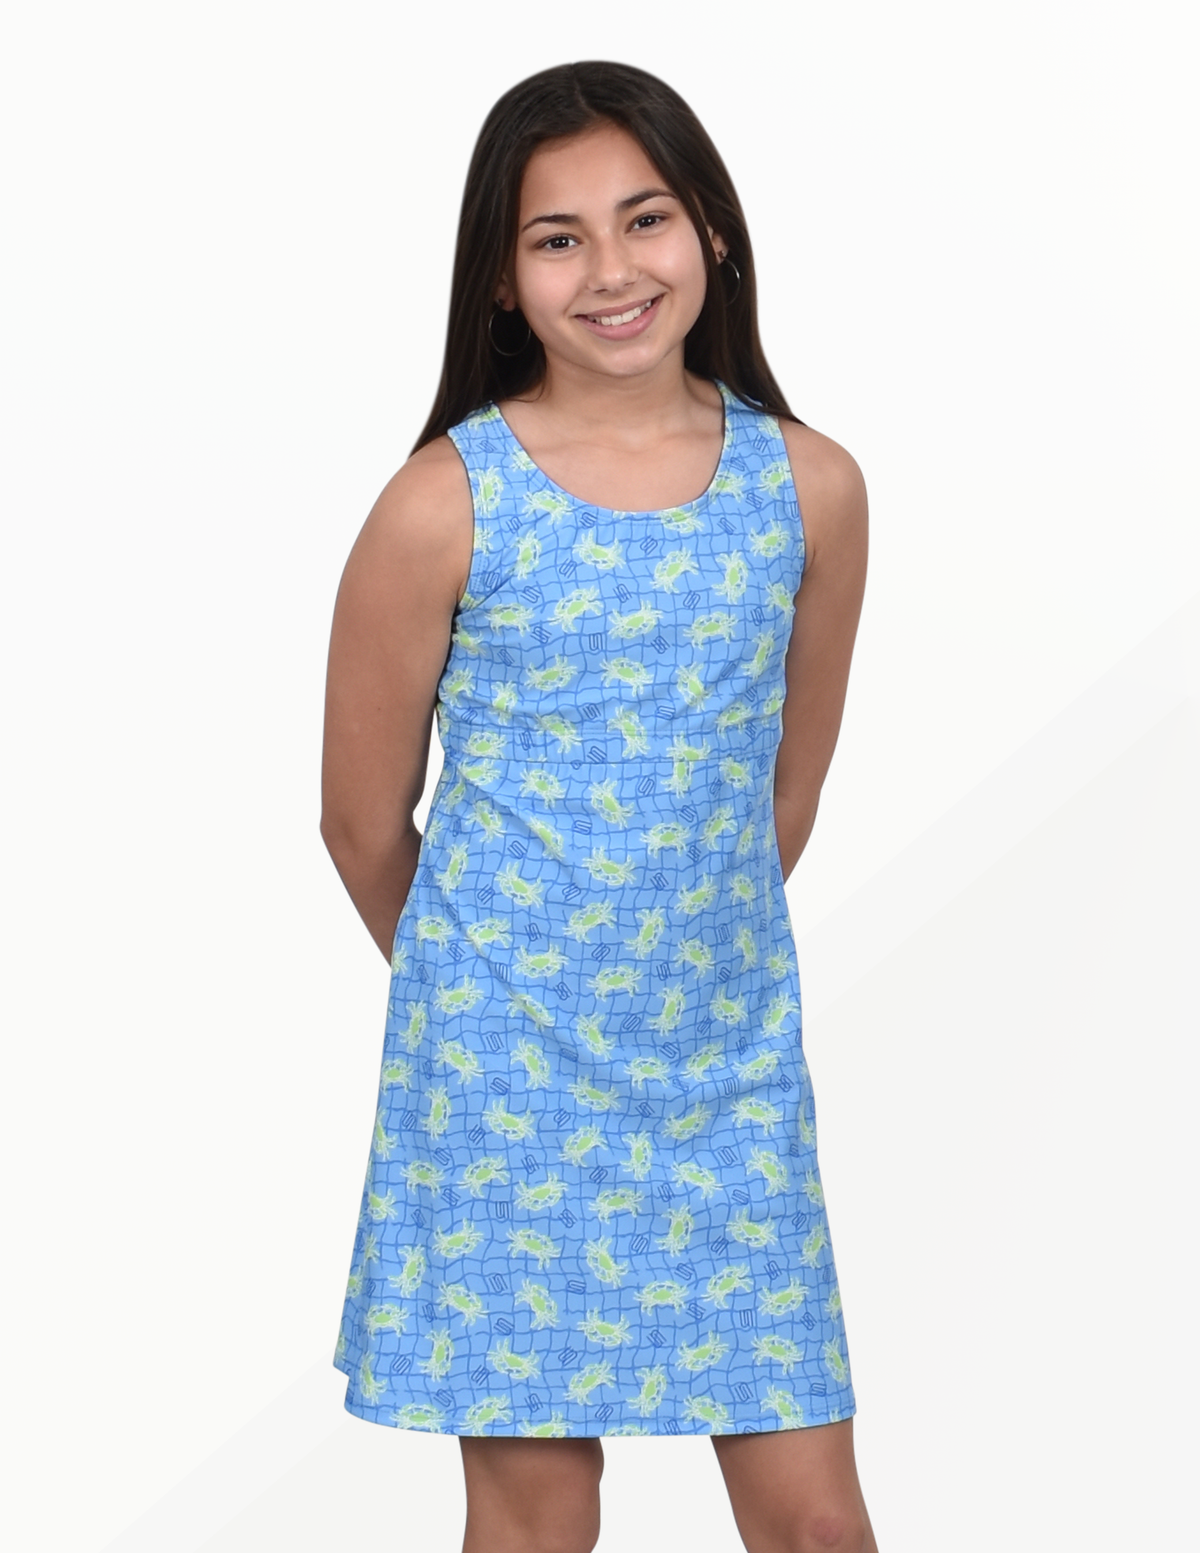 Little Girls Original Dress-Lime Crab